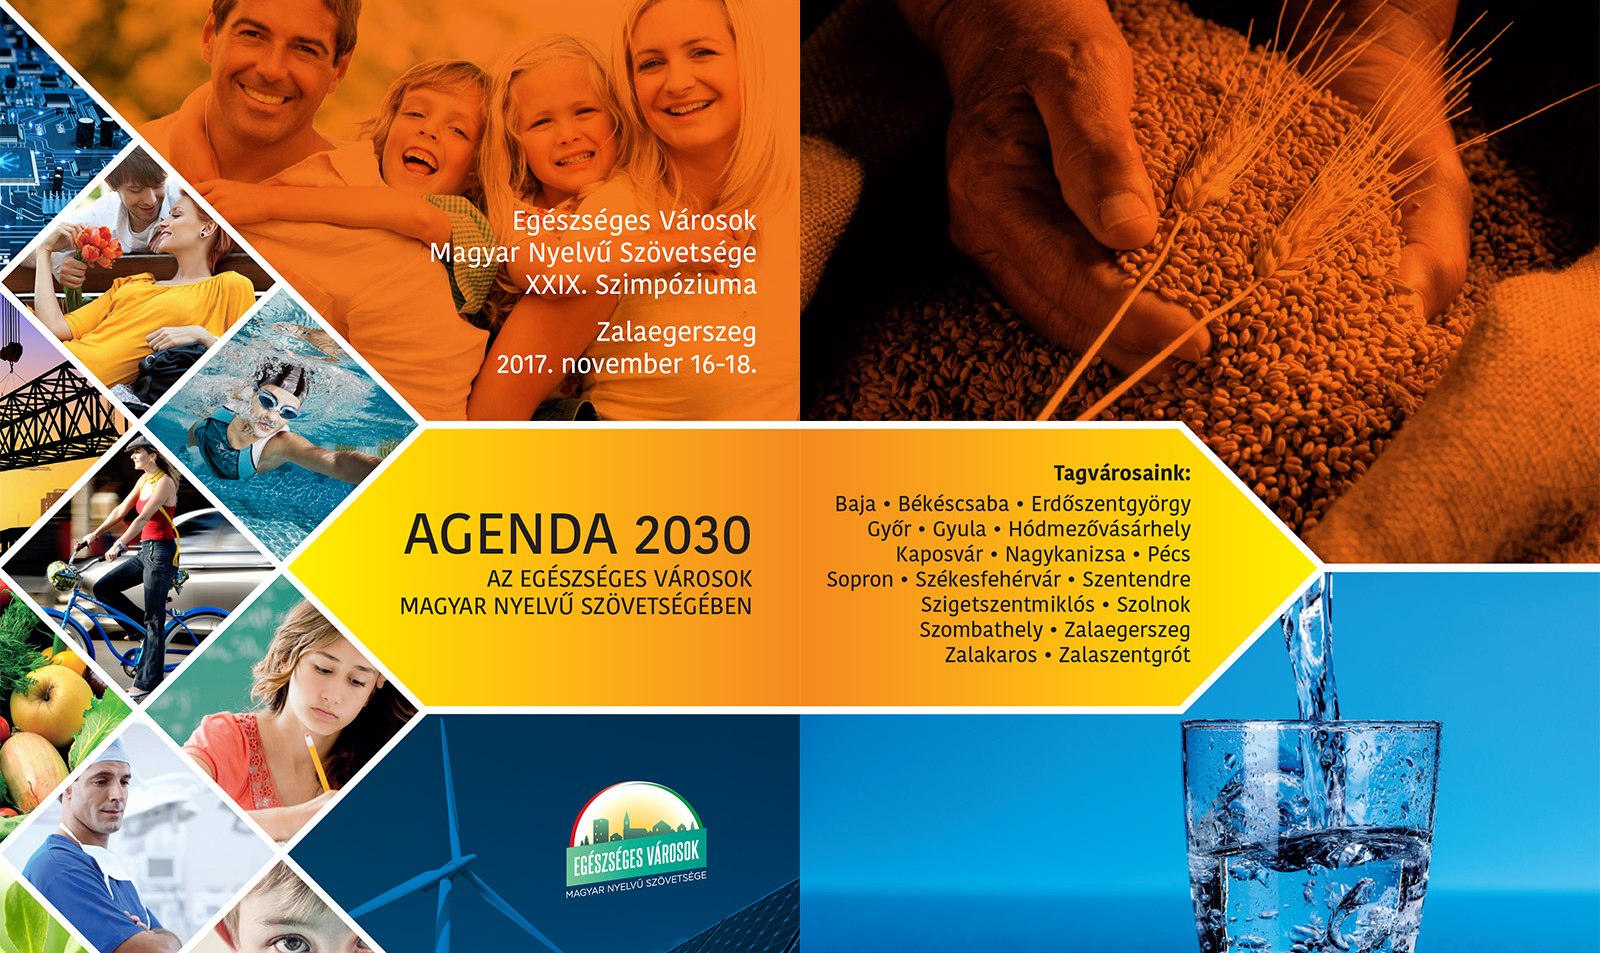 Agenda 2030 - városok egészséges fejlődésének alternatívái